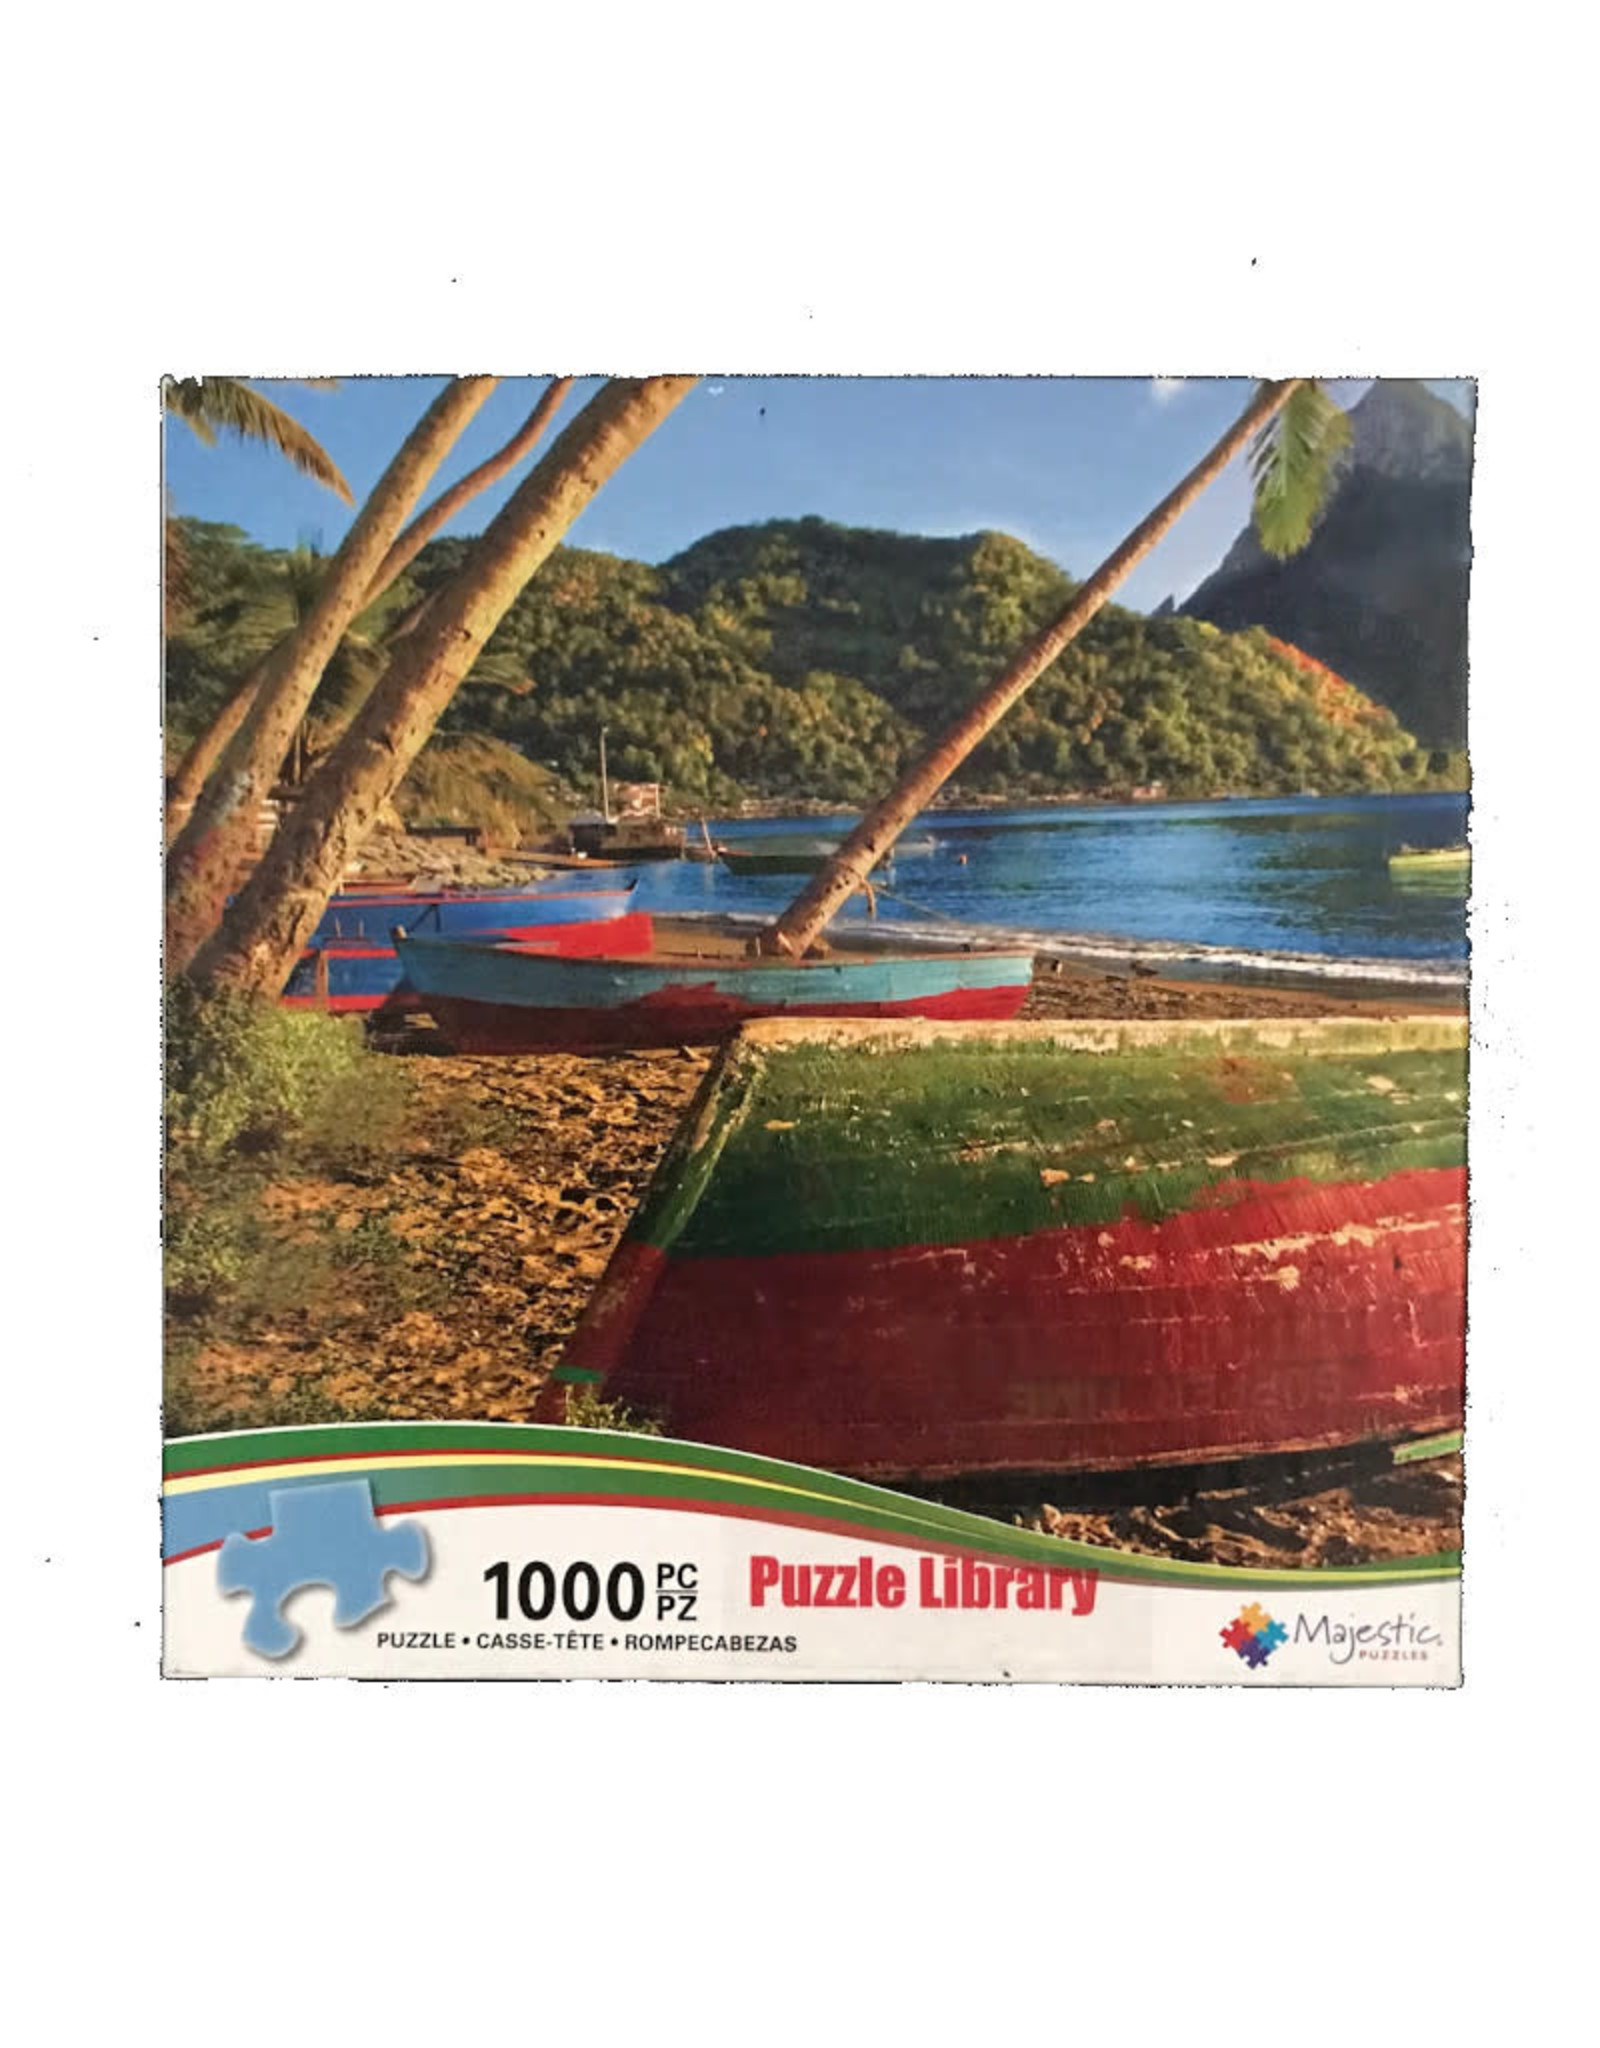 Misc St. Lucia Puzzle 1000 PCS